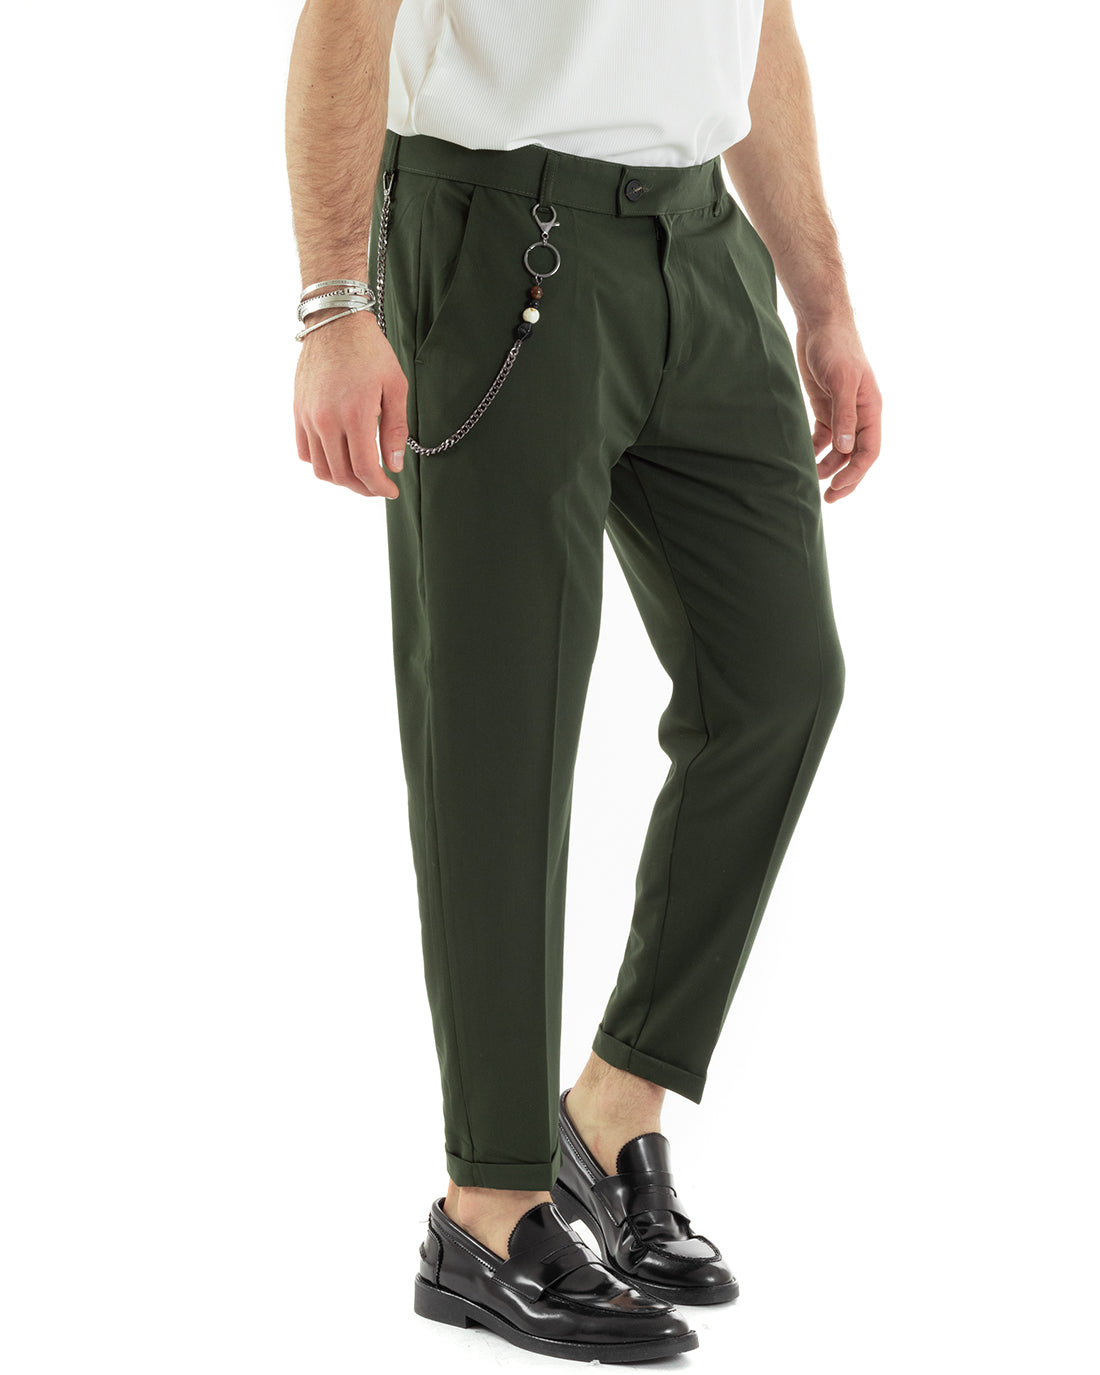 Pantaloni Uomo Viscosa Tasca America Classico Abbottonatura Allungata Casual Verde GIOSAL-P5964A